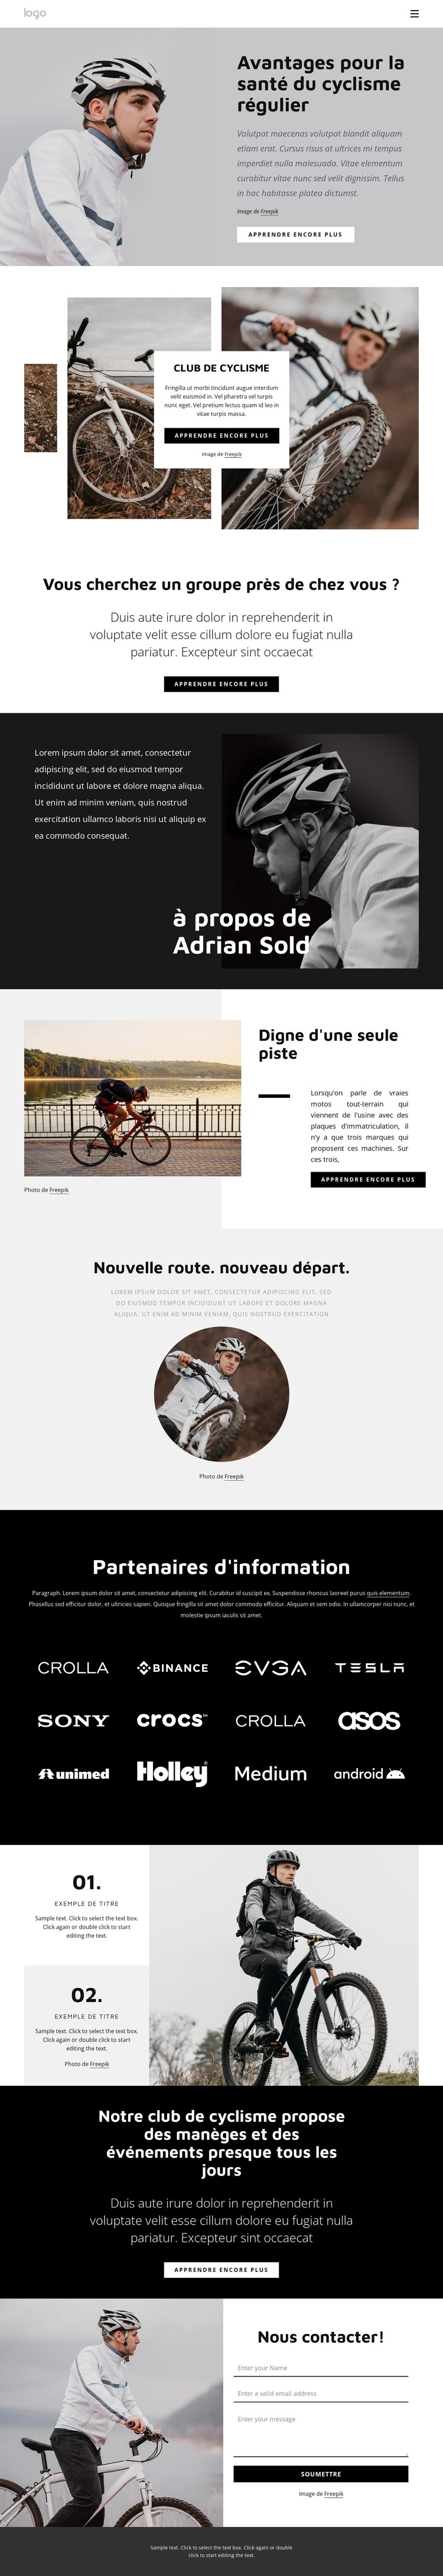 Avantages du cyclisme régulier Modèle HTML